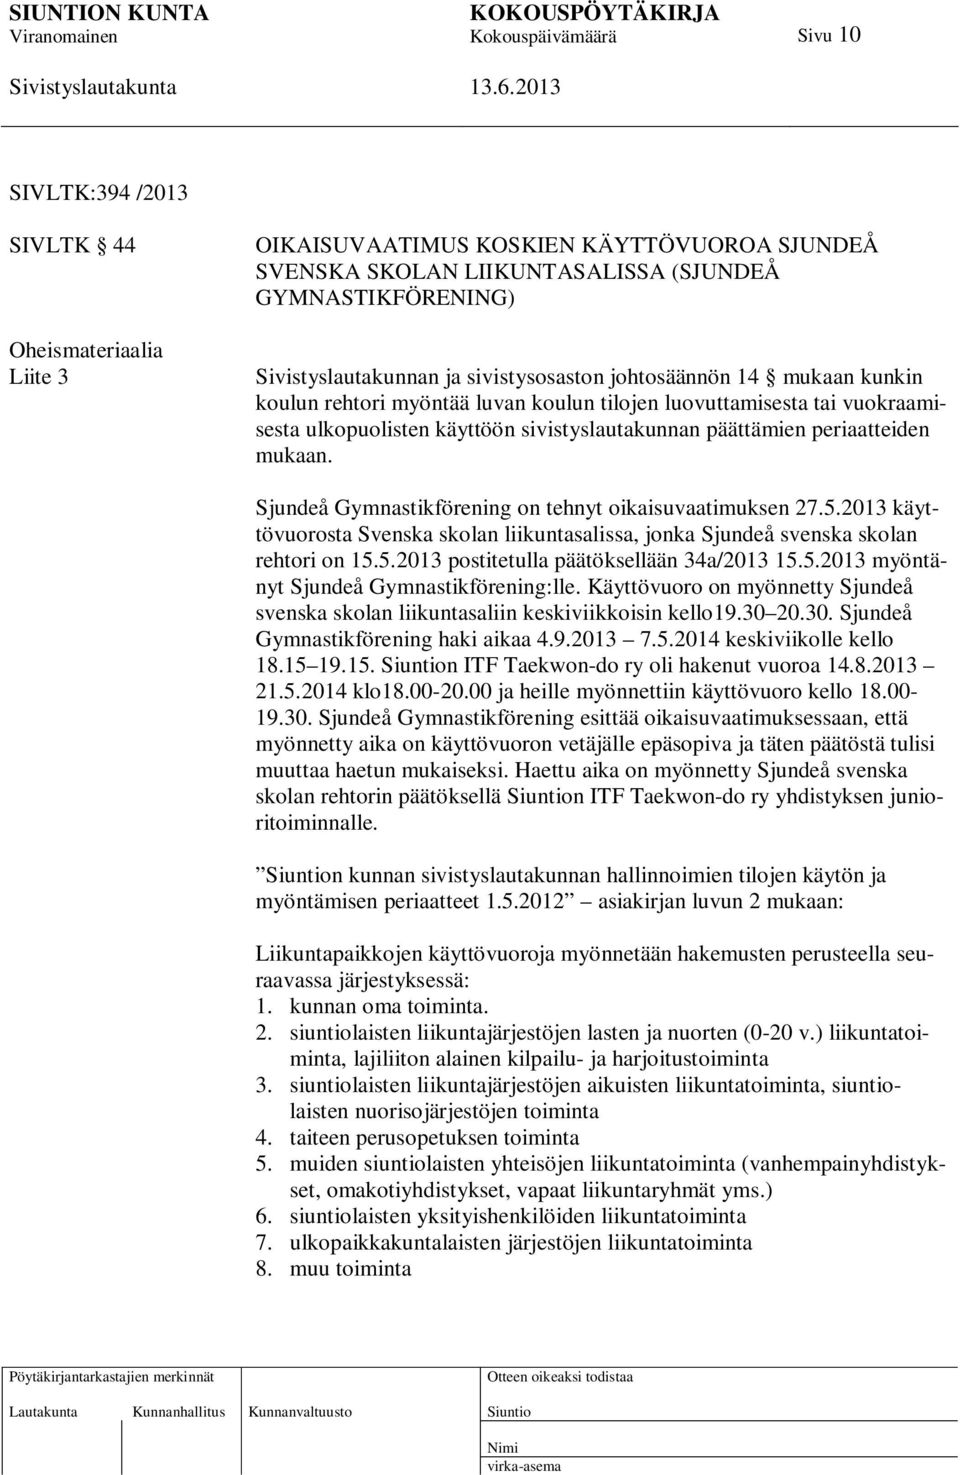 Sjundeå Gymnastikförening on tehnyt oikaisuvaatimuksen 27.5.2013 käyttövuorosta Svenska skolan liikuntasalissa, jonka Sjundeå svenska skolan rehtori on 15.5.2013 postitetulla päätöksellään 34a/2013 15.